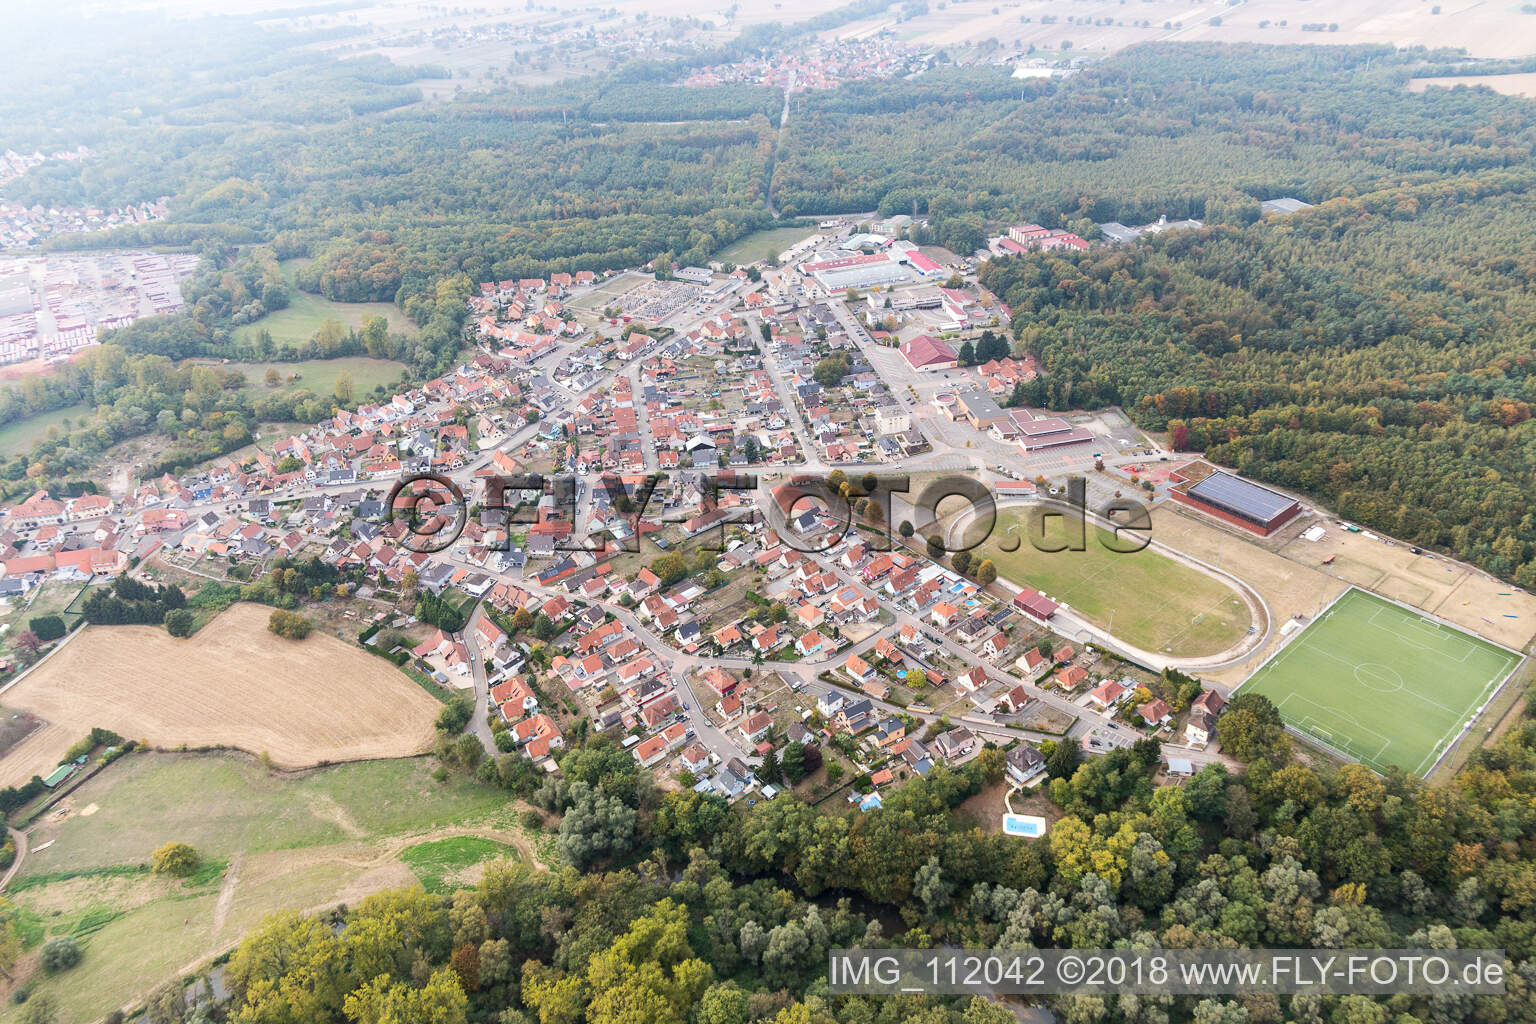 Seltz dans le département Bas Rhin, France vue d'en haut